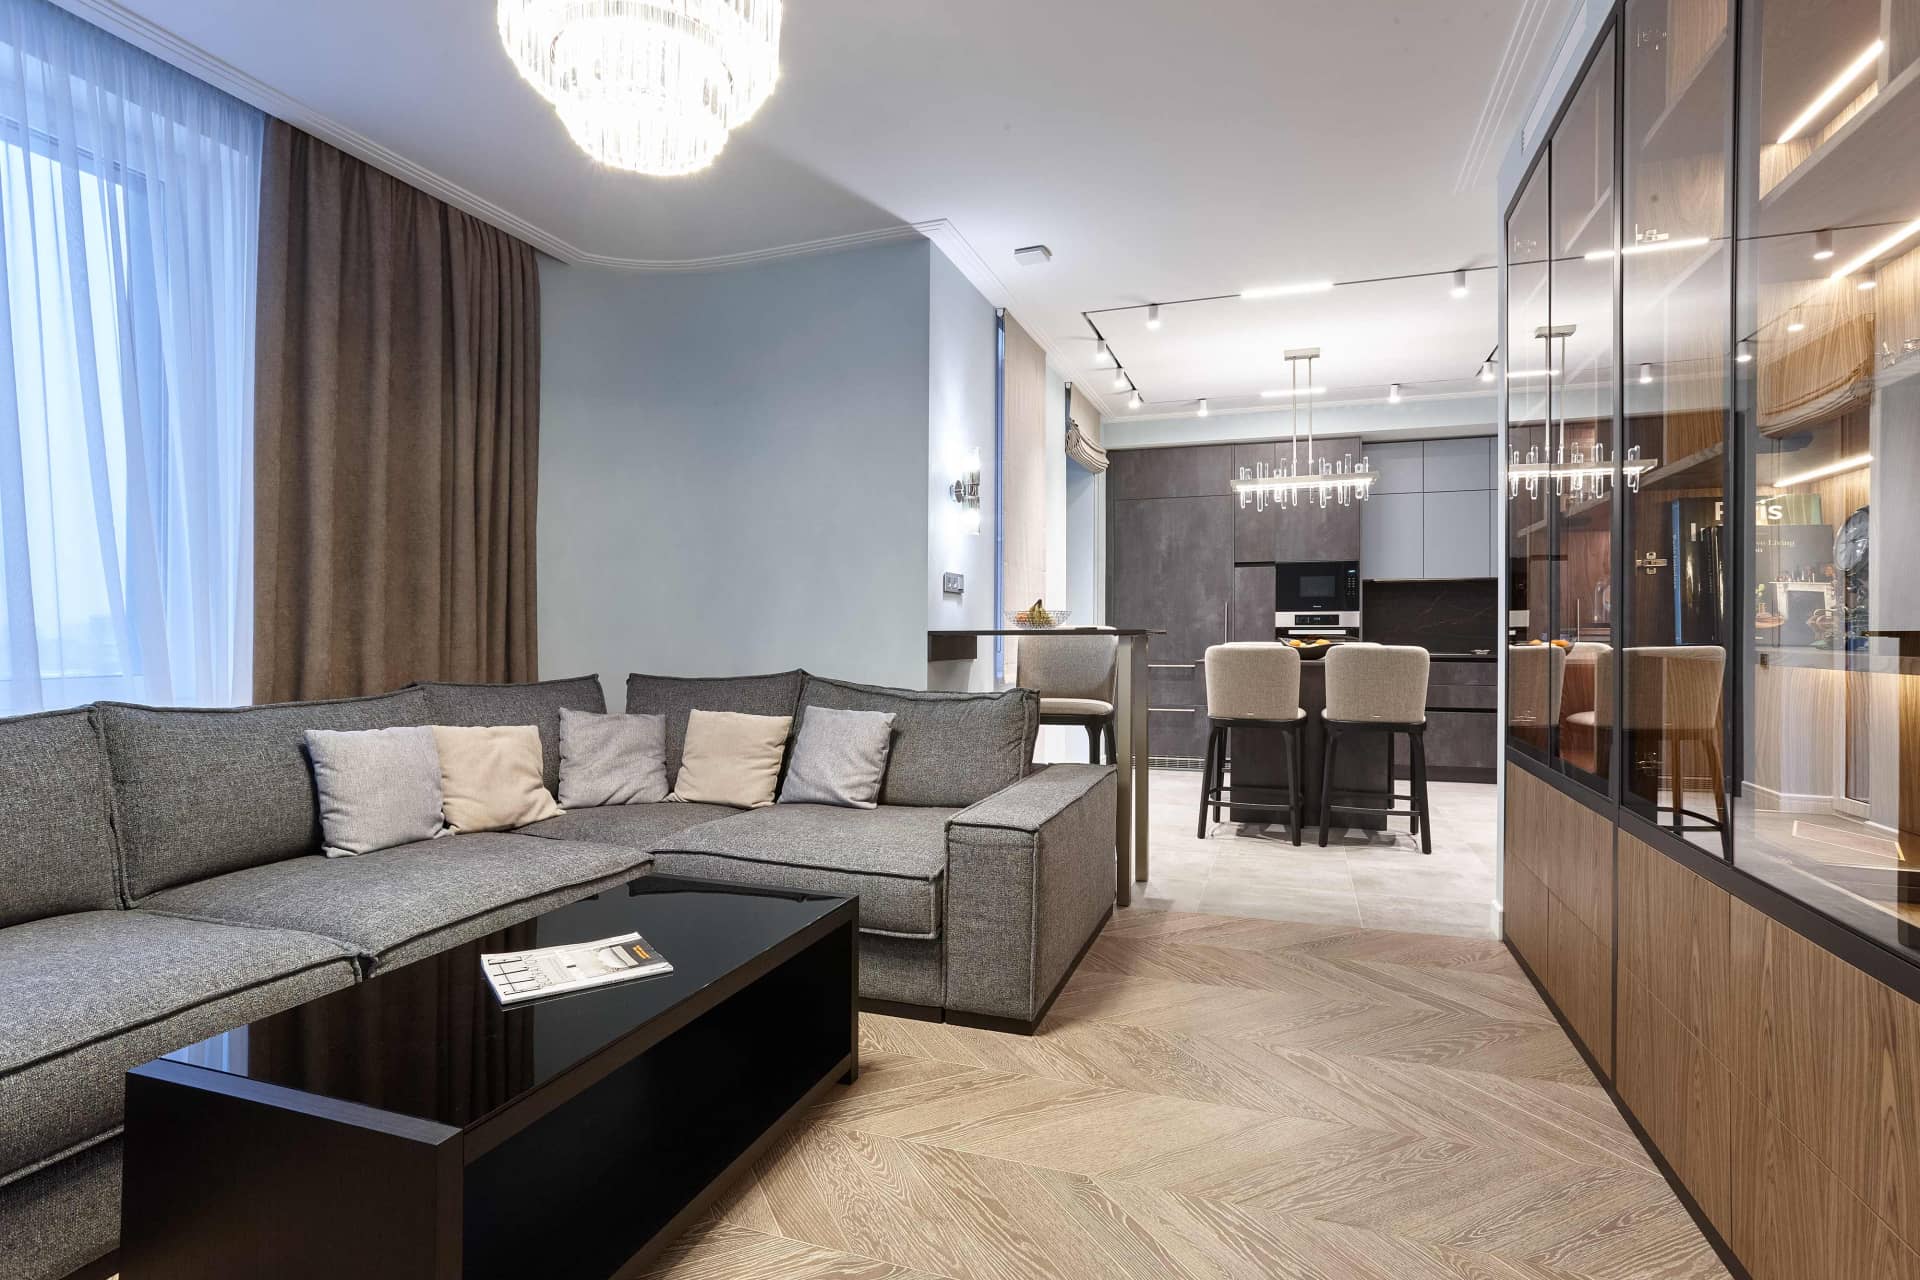 Оформление интерьера гостиной трехкомнатной квартиры в коричневый цвет в стиле современной классики. Фото № 68318.